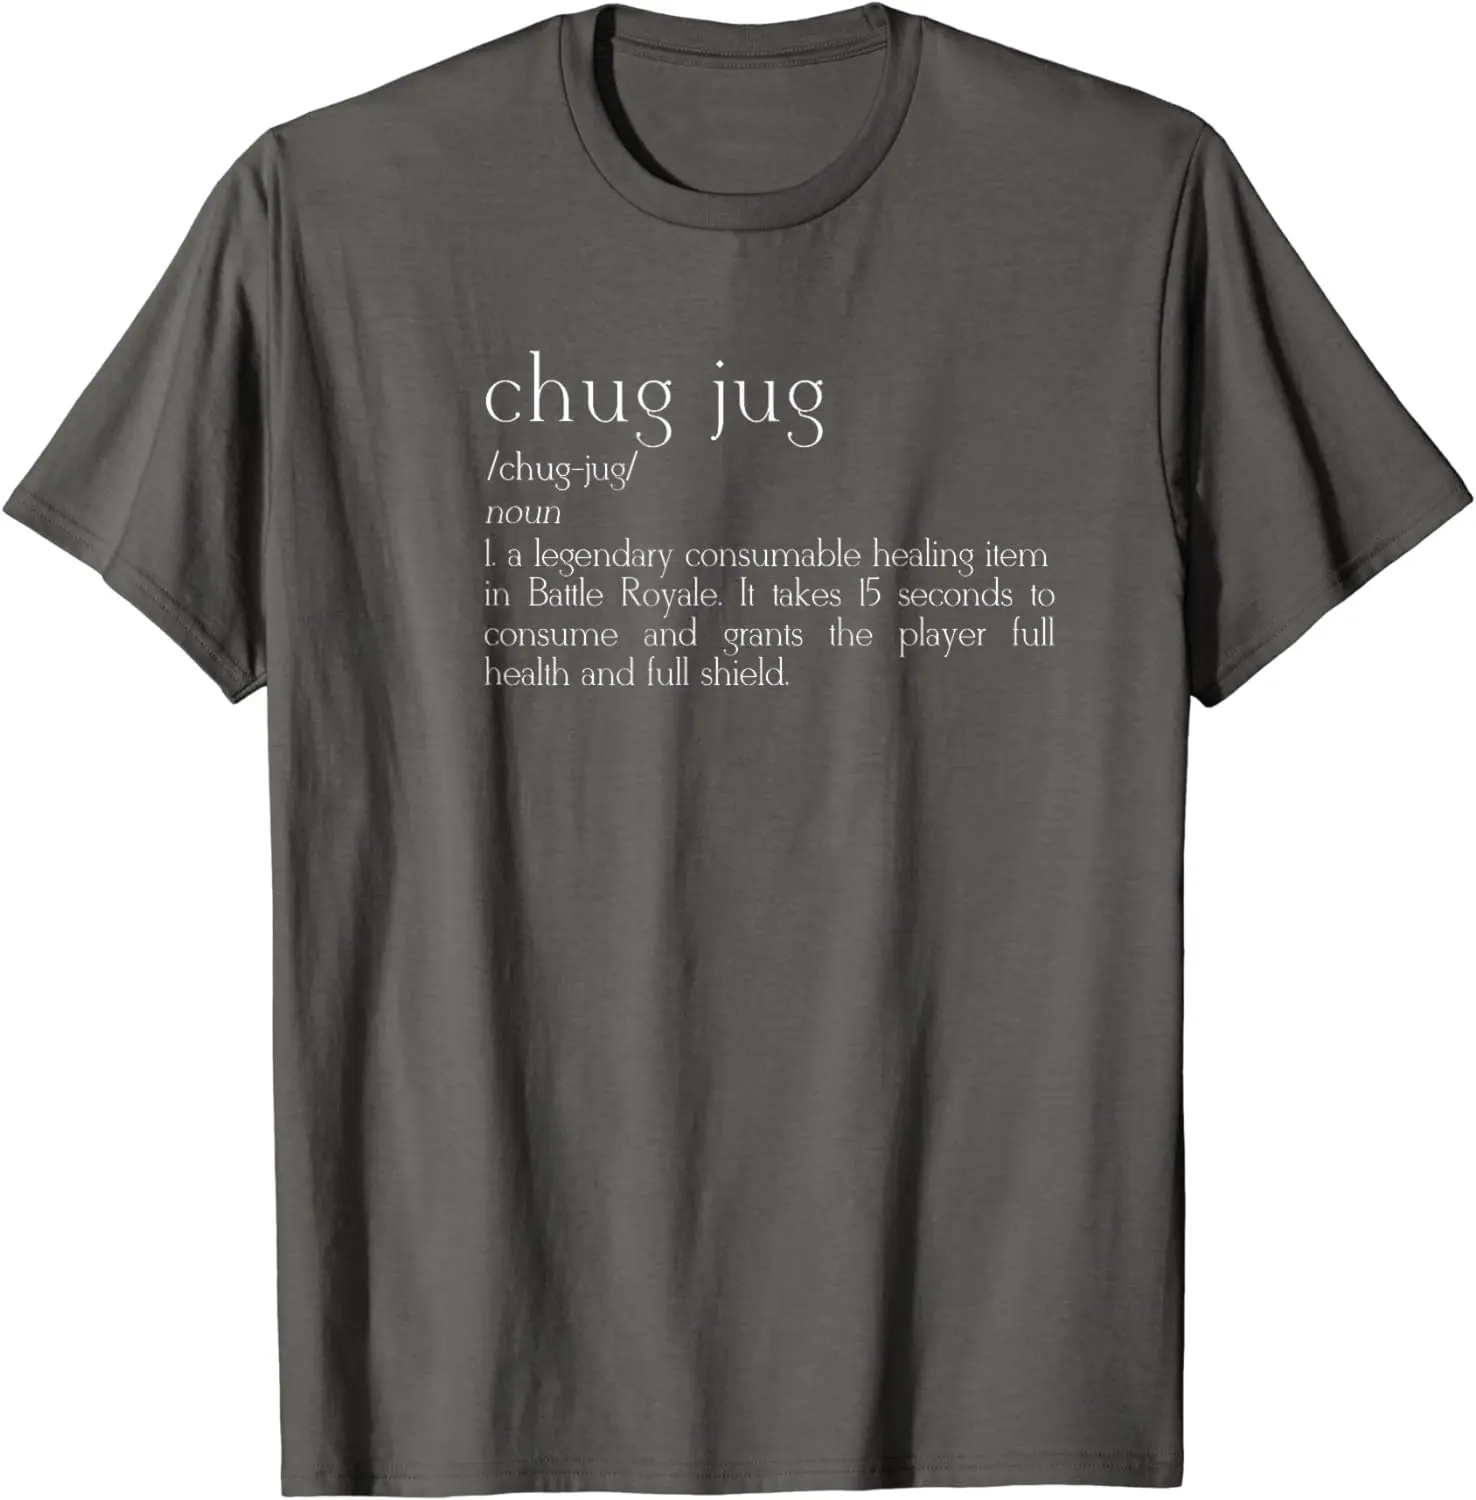 chug jug meaning - Where is the Chug Jug